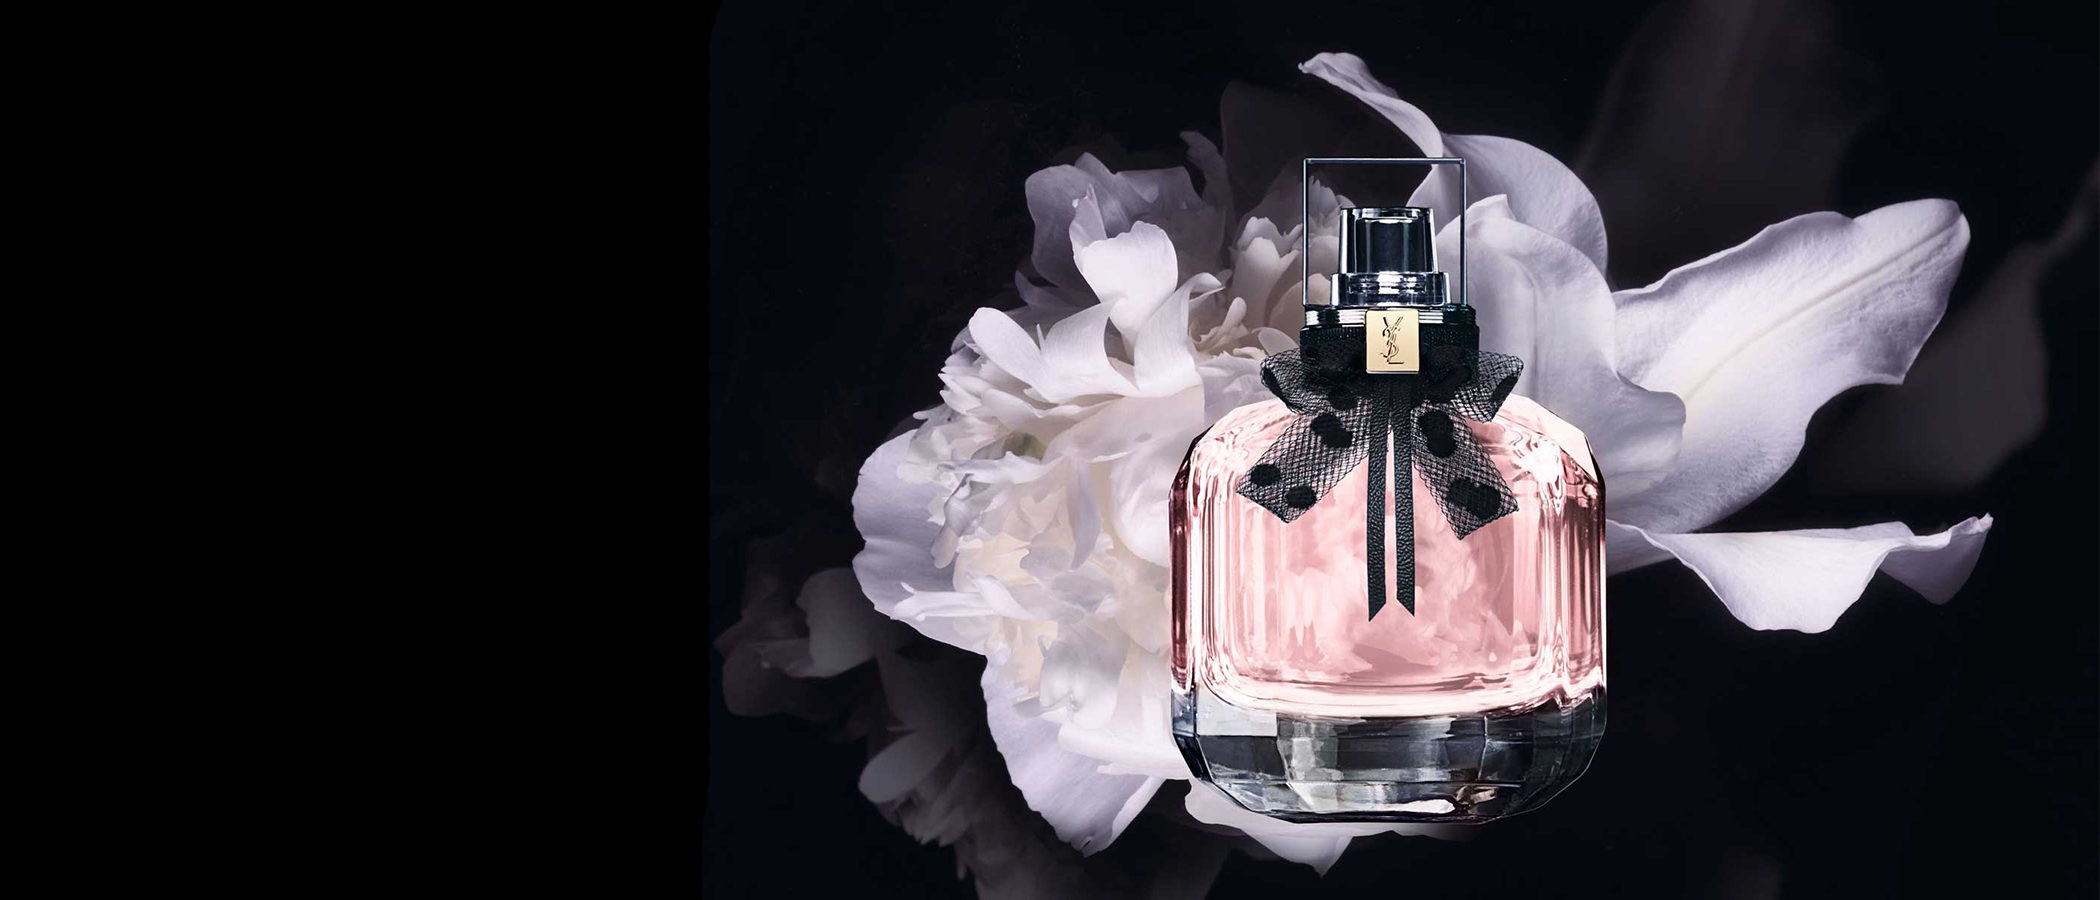 Yves Saint Laurent lanza una reedición de su clásico perfume inspirado en París, 'Mon Paris Eau de Toilette'